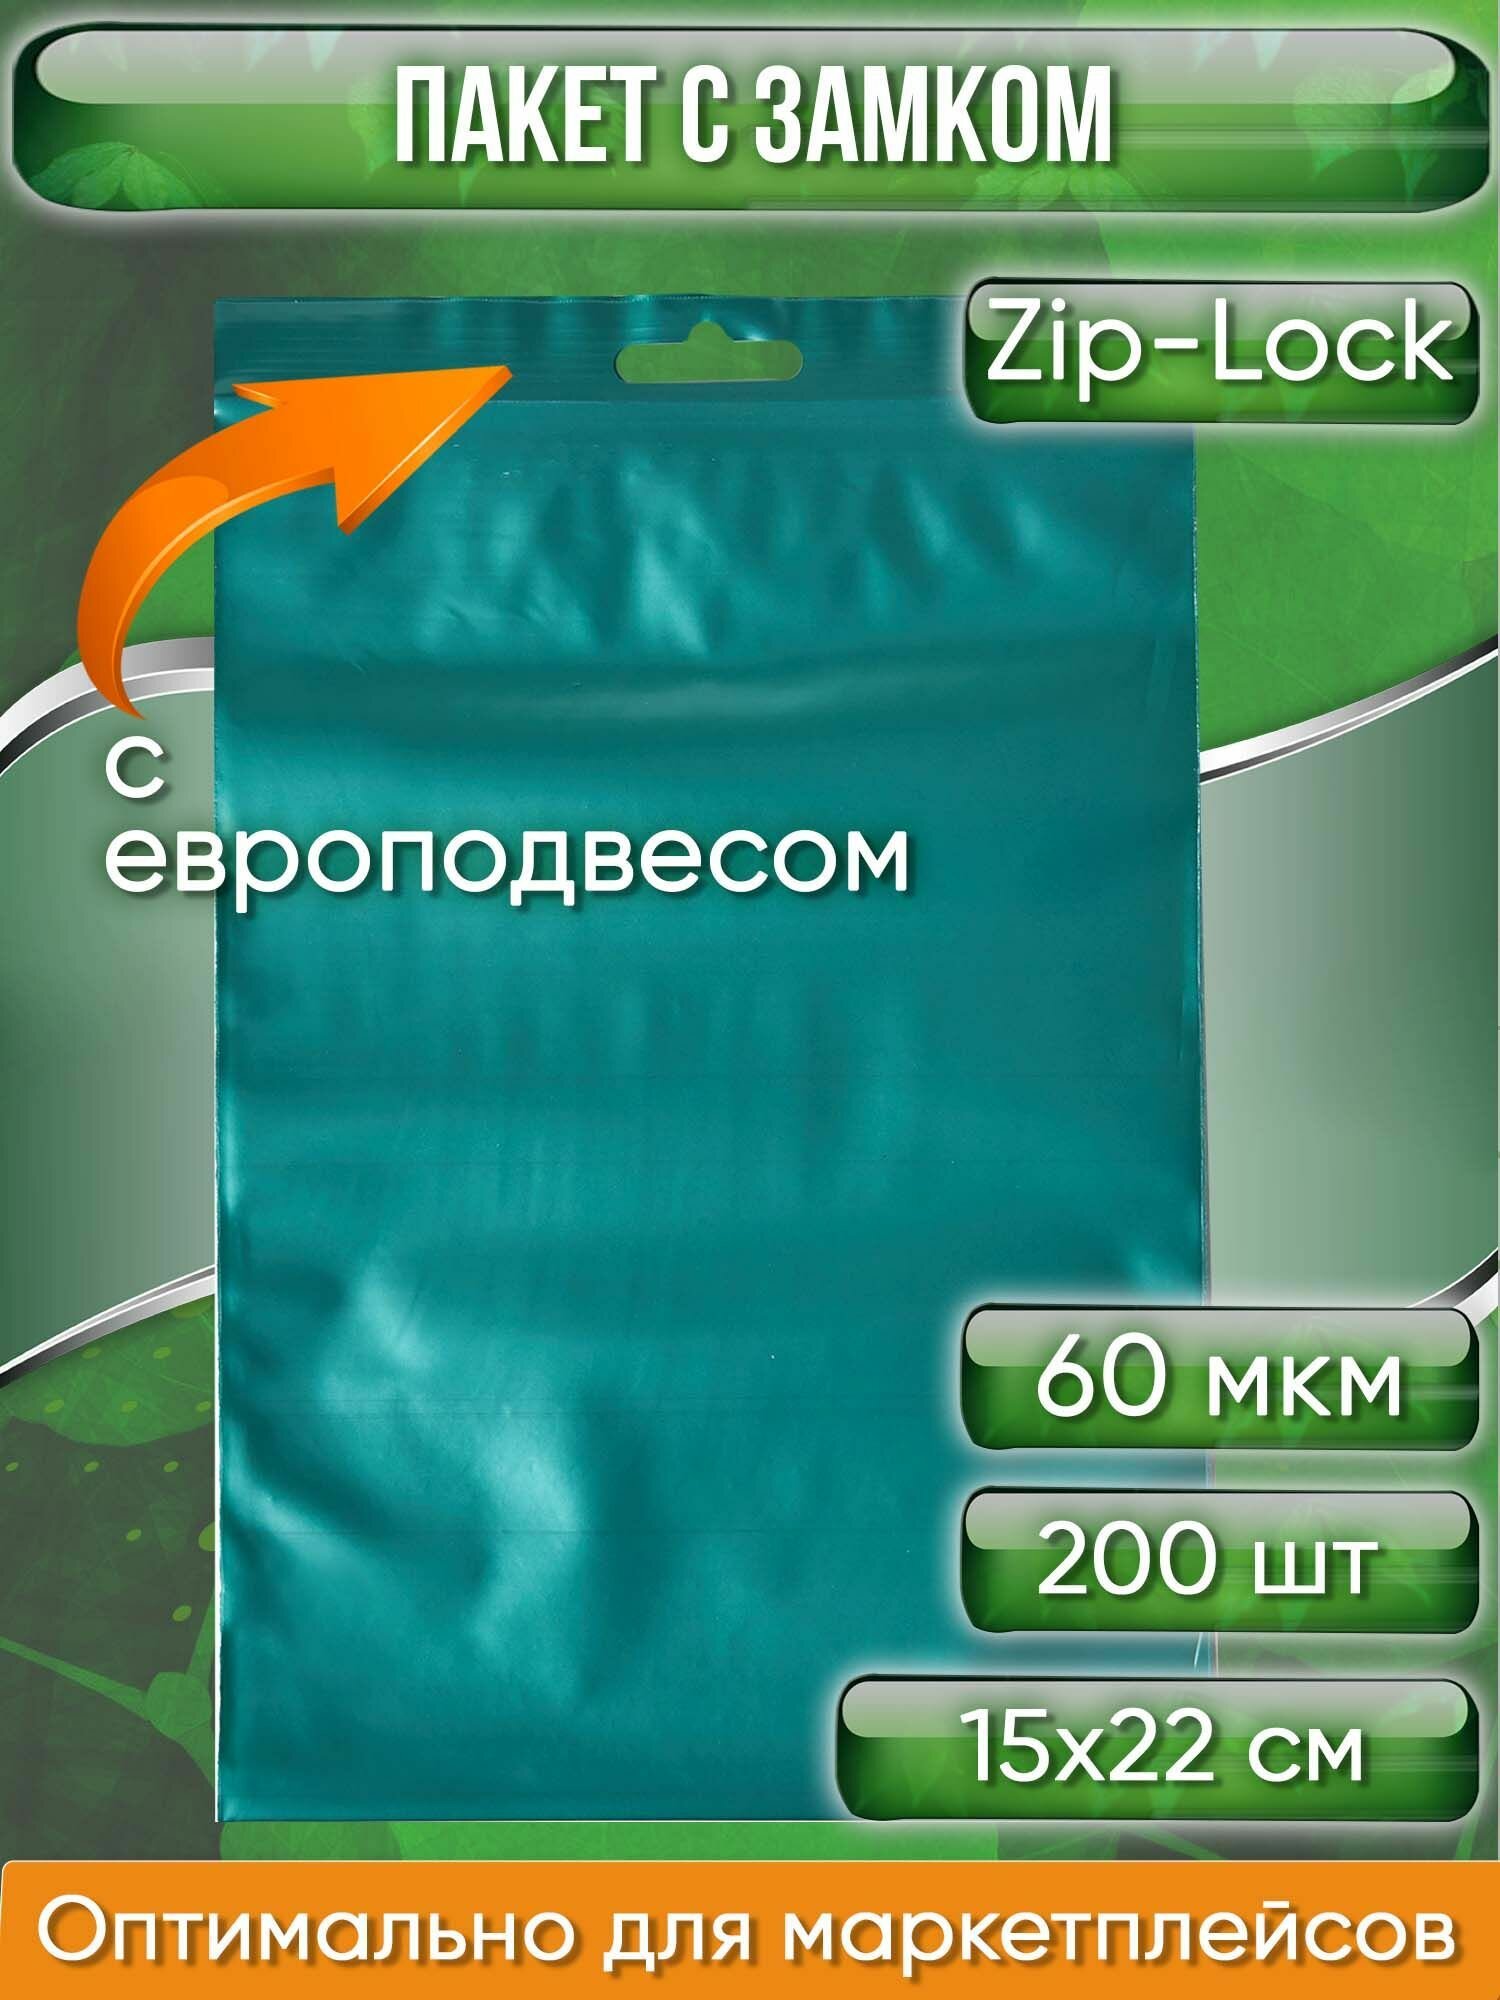 Пакет с замком Zip-Lock (Зип лок), 15х22 см, 60 мкм, с европодвесом, сверхпрочный, зеленый металлик, 200 шт. - фотография № 1